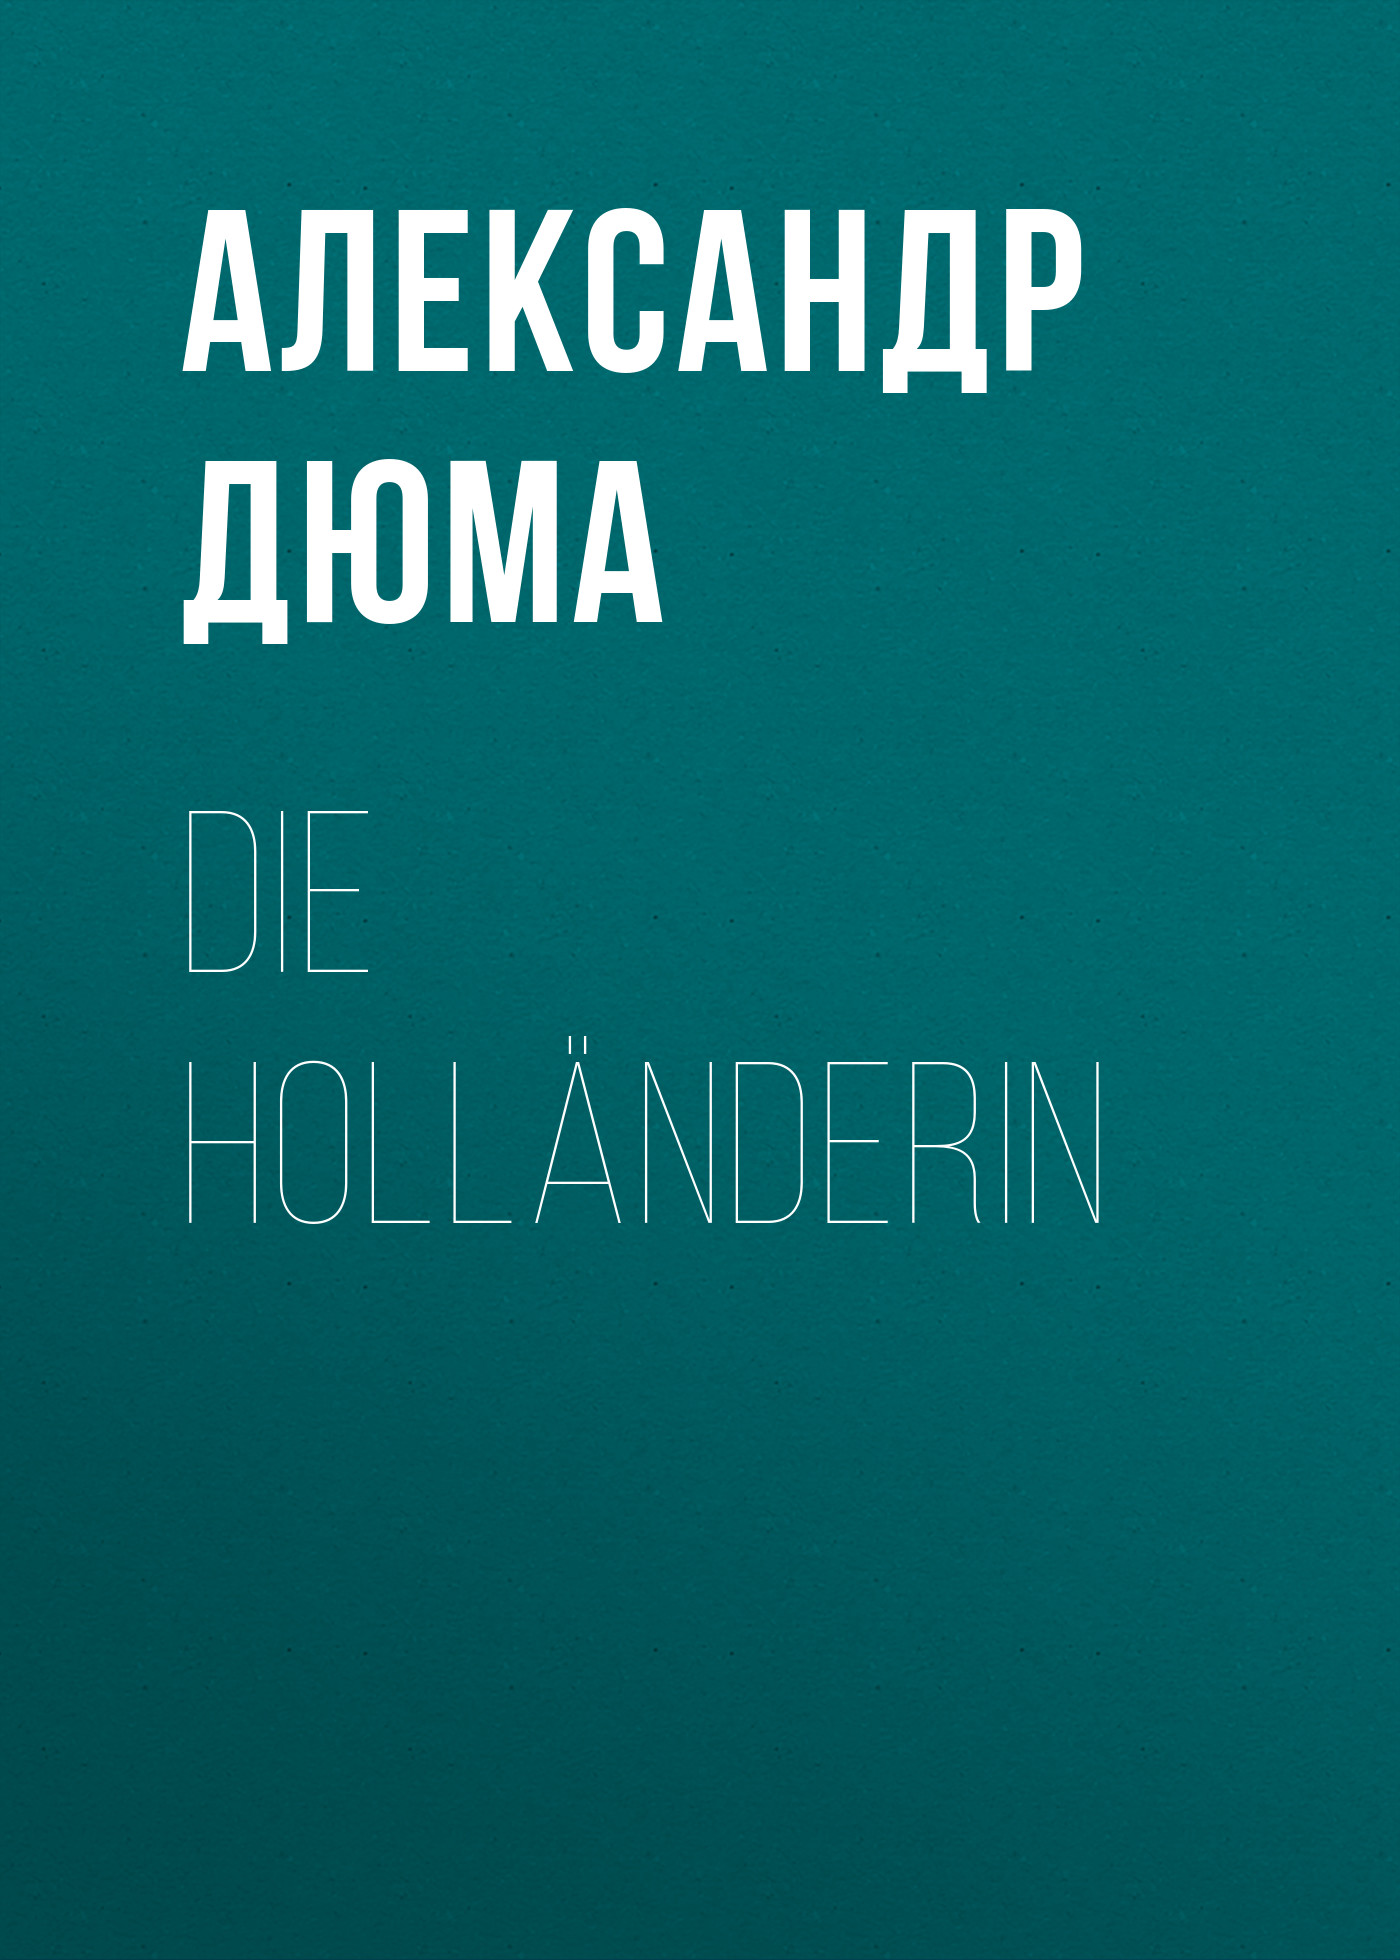 Книга Die Holländerin из серии , созданная Alexandre Dumas der Ältere, может относится к жанру Зарубежная классика. Стоимость электронной книги Die Holländerin с идентификатором 48632572 составляет 0 руб.